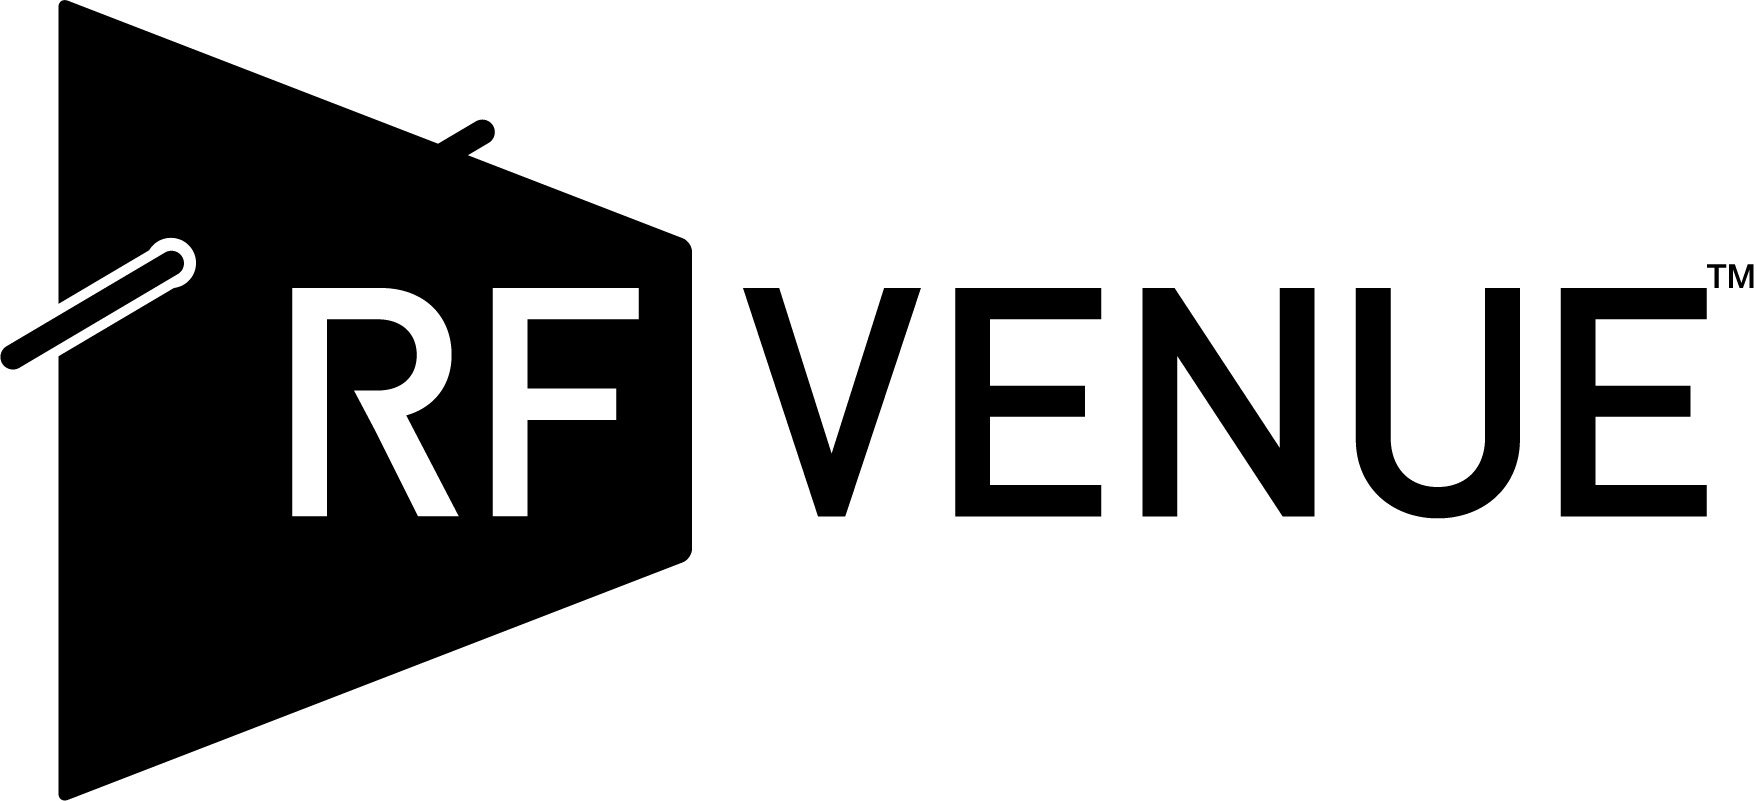 RFVenue-logo-black